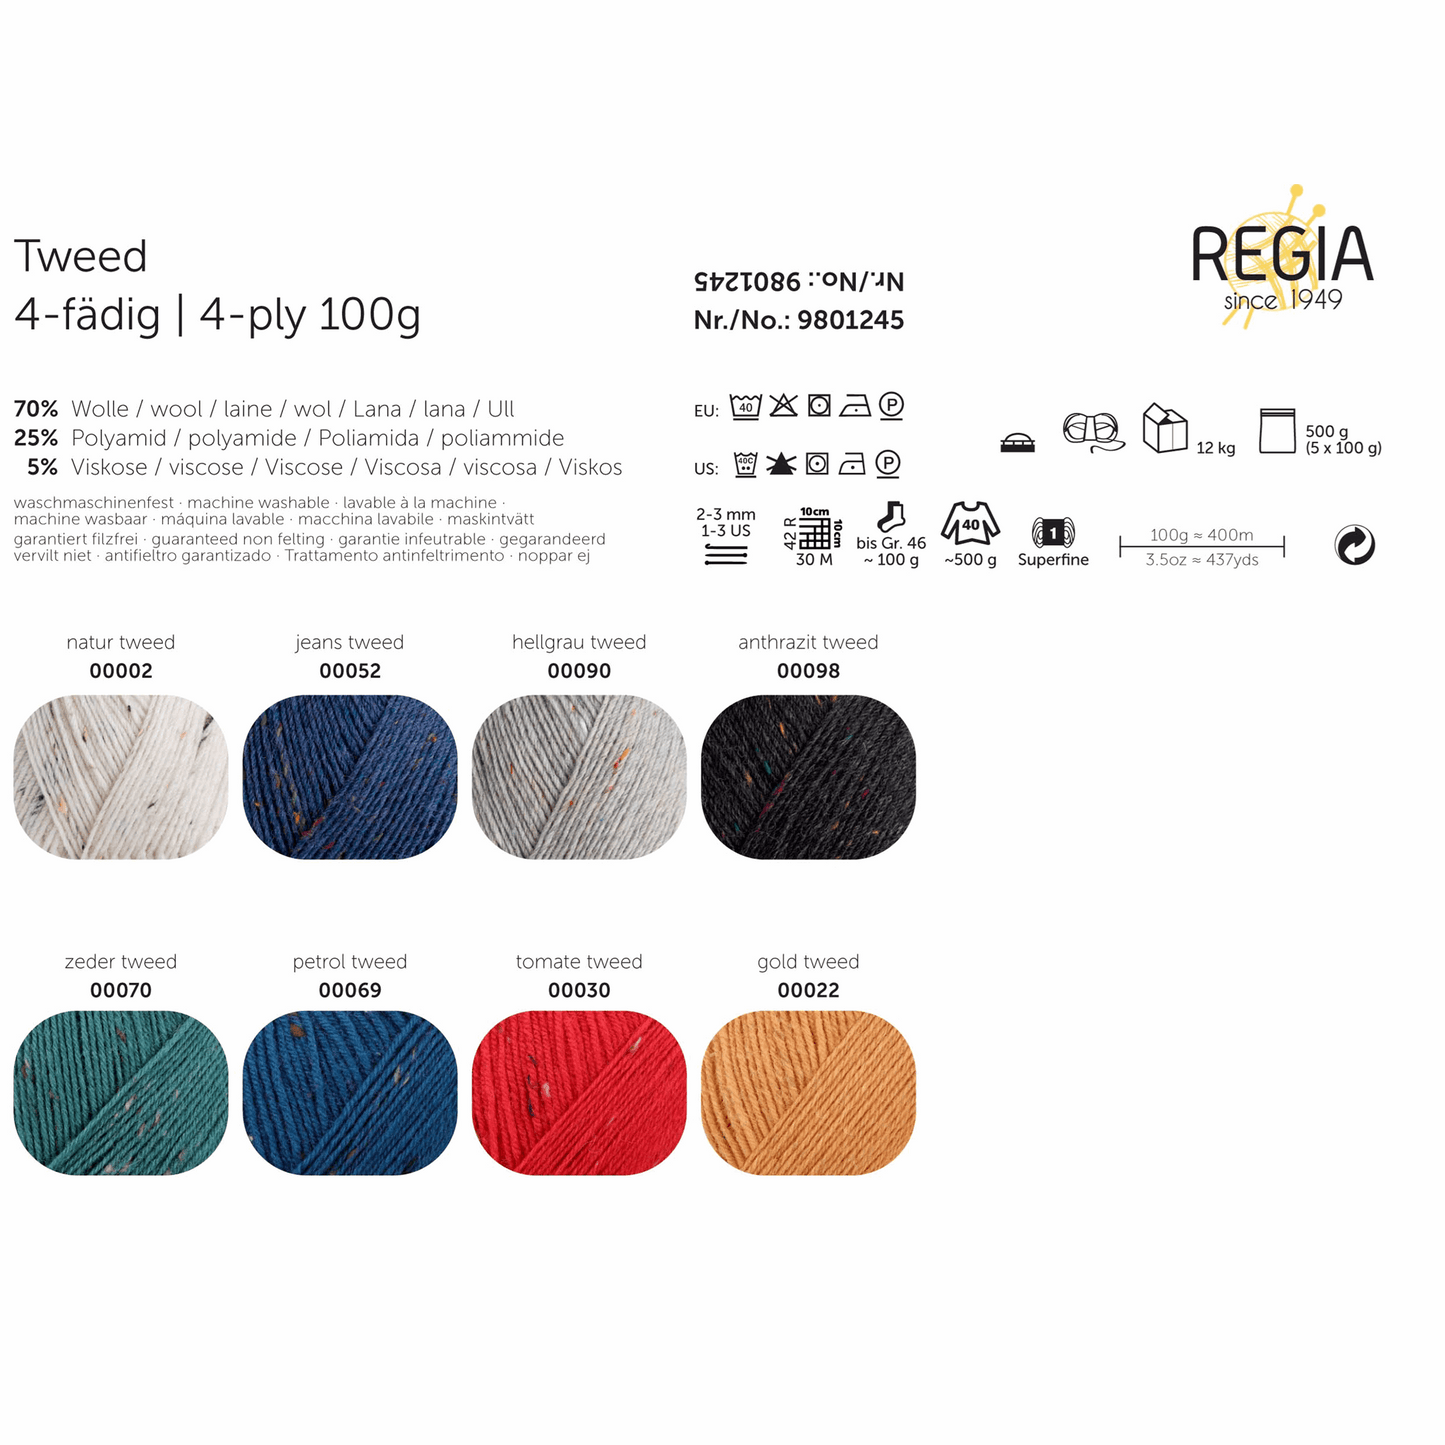 Regia 4-ply 100g tweed, 90246, color 2, natural tweed